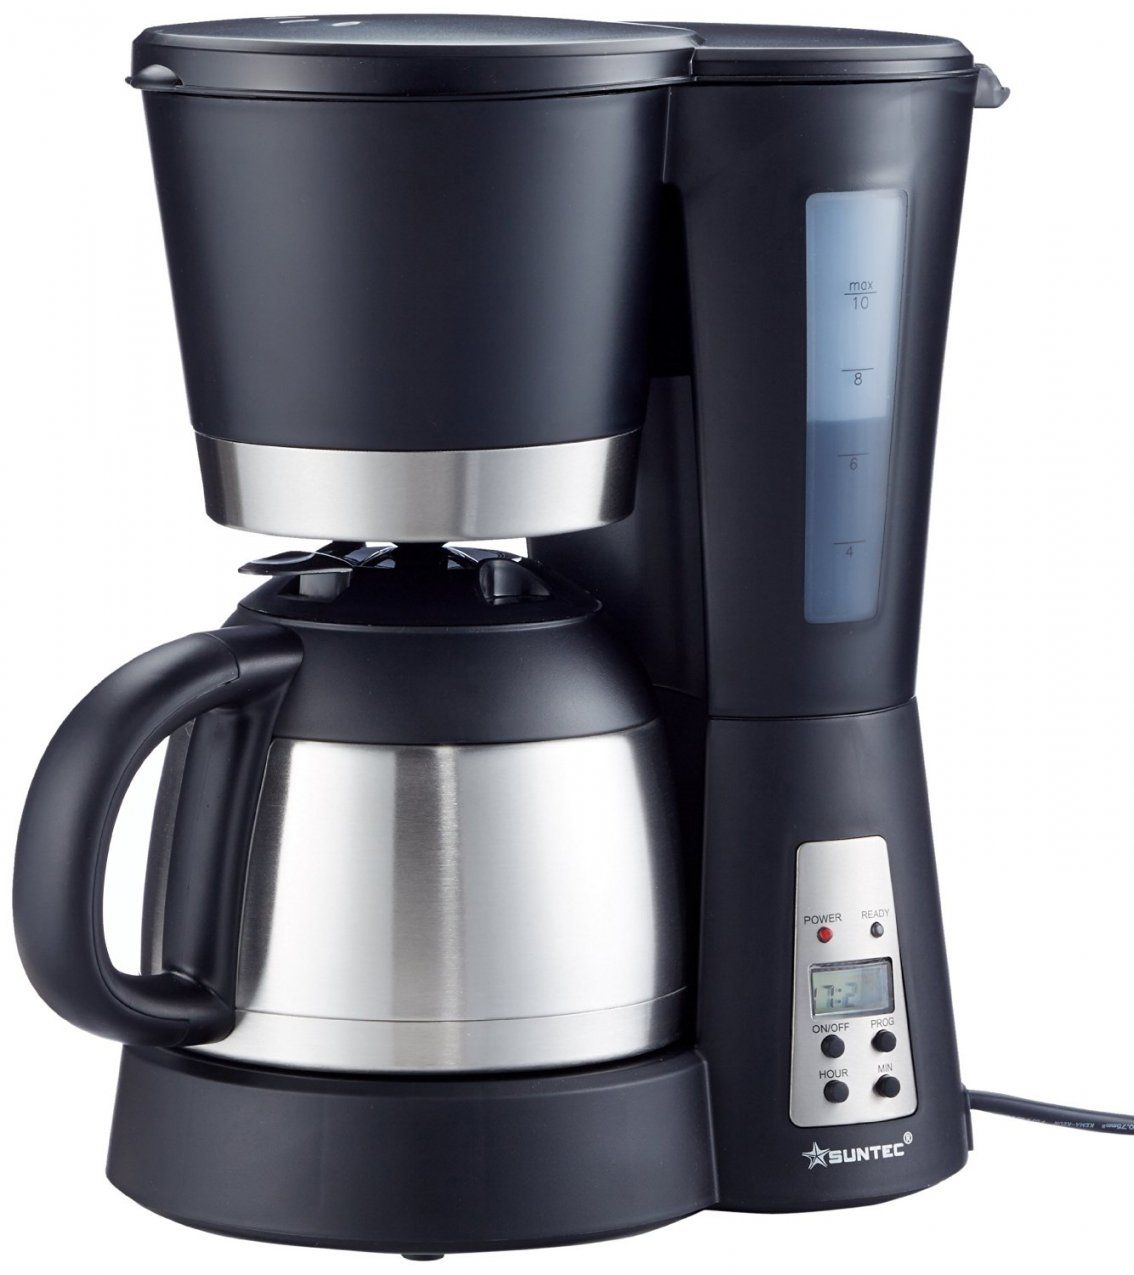 Beste Kaffeemaschine Mit Timer Und Thermoskanne Test von Melitta Kaffeemaschine Mit Abnehmbaren Wassertank Und Thermoskanne Bild